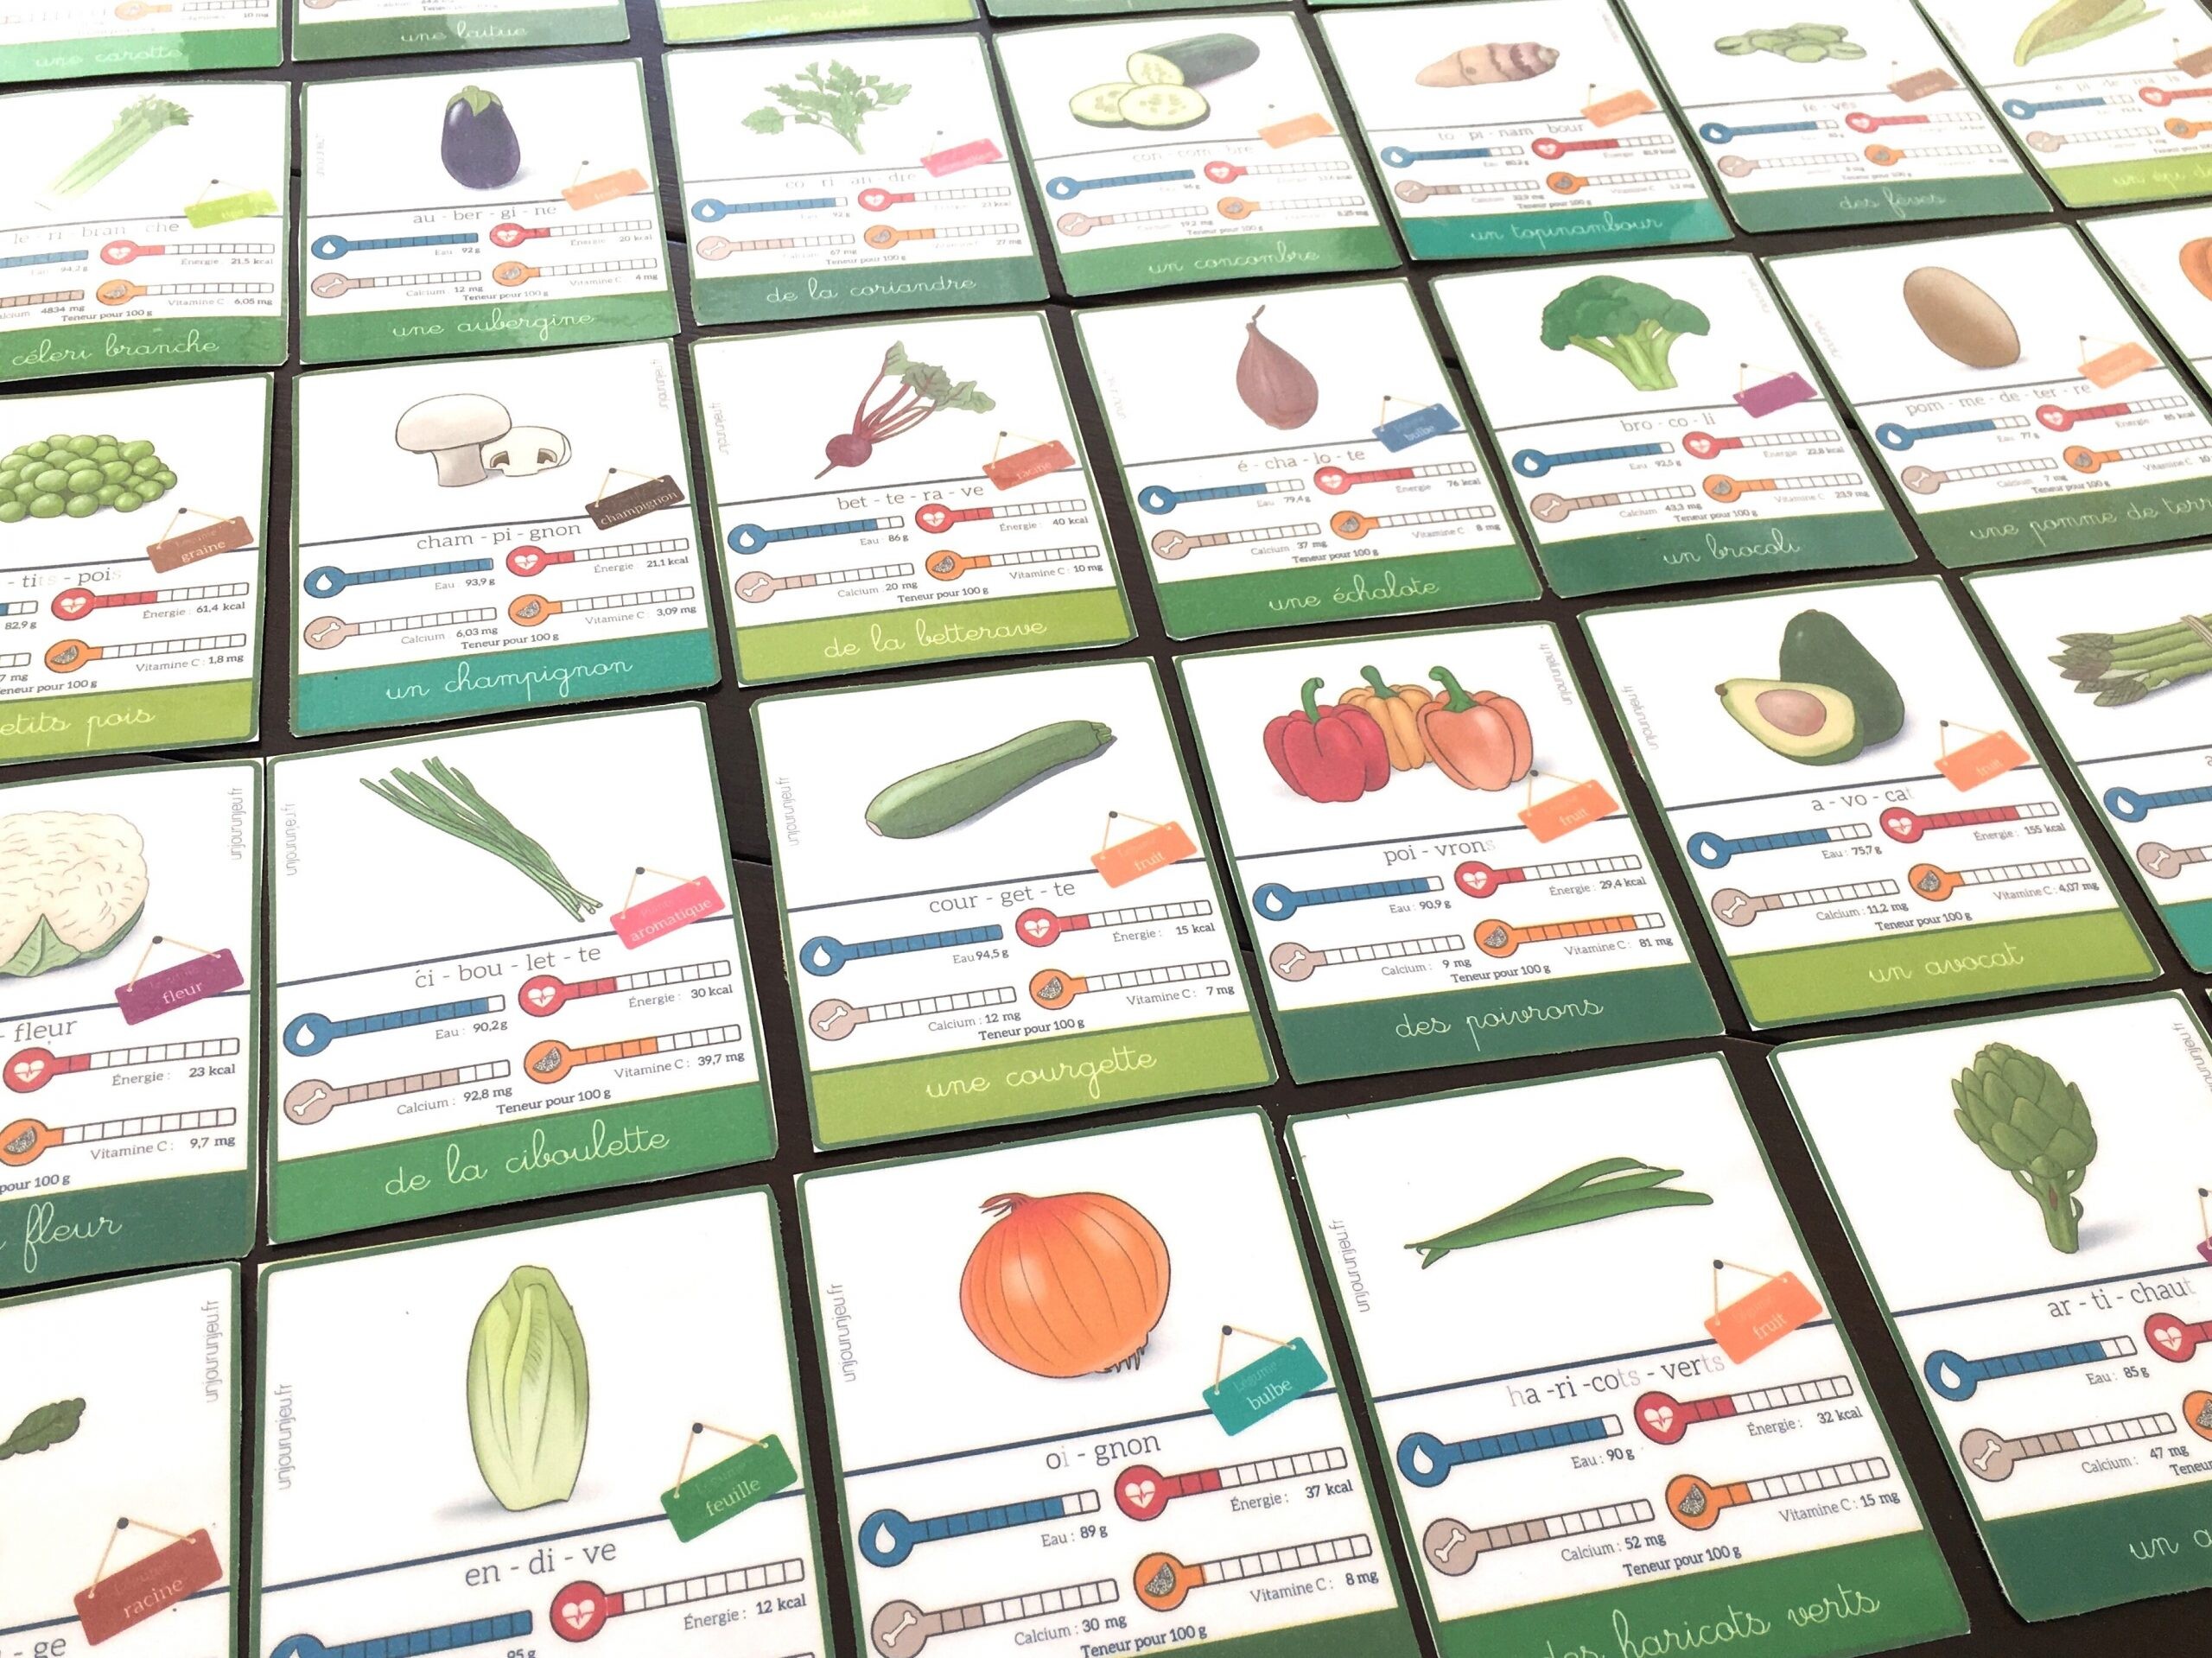 36 cartes de nomenclature sur les légumes